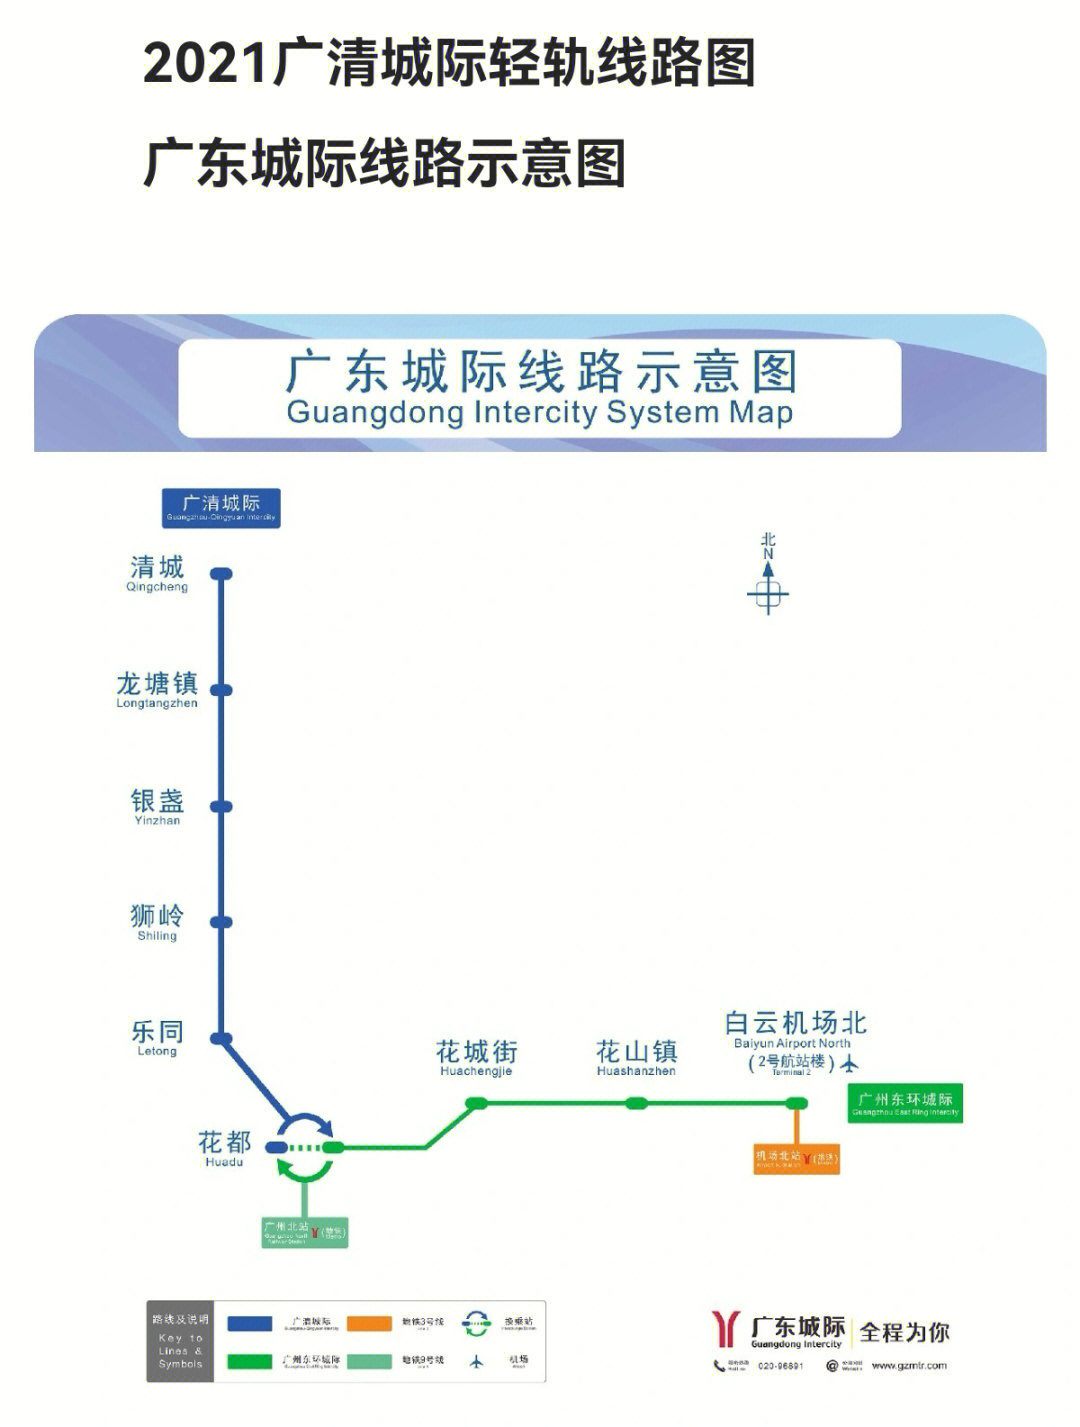 广州轻轨路线图片图片